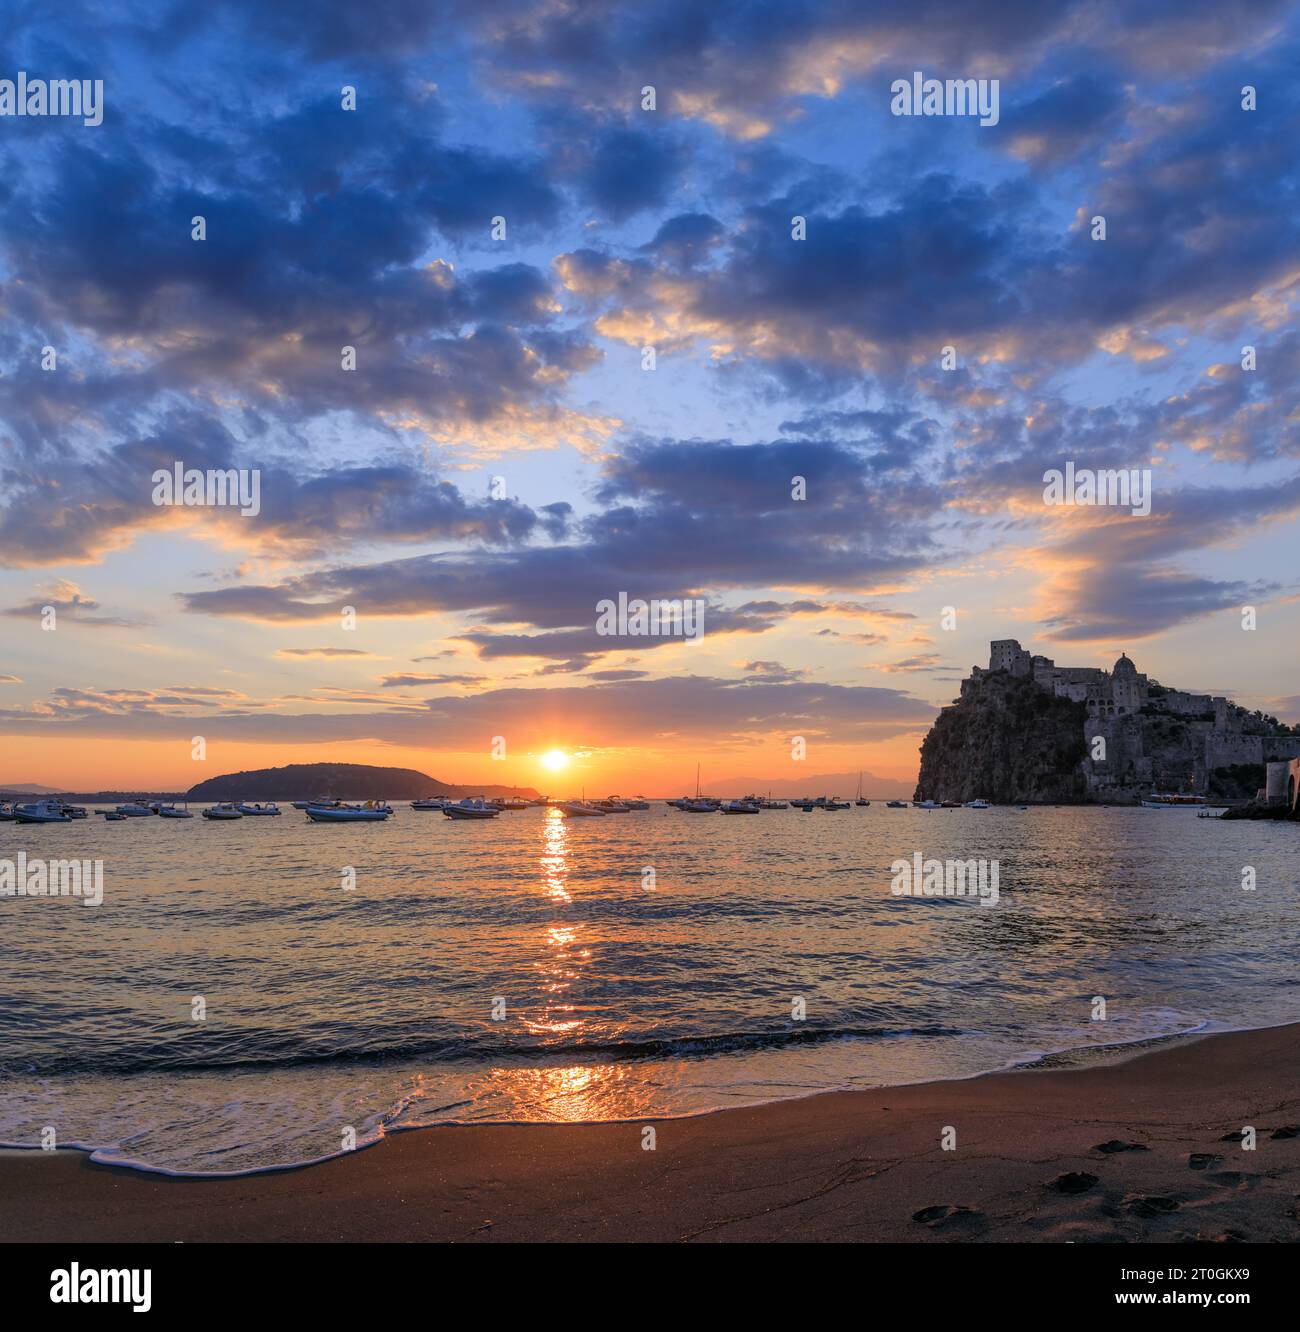 Sunrise view of Ischia, italy. Sandy beach of Ischia Porto. Stock Photo